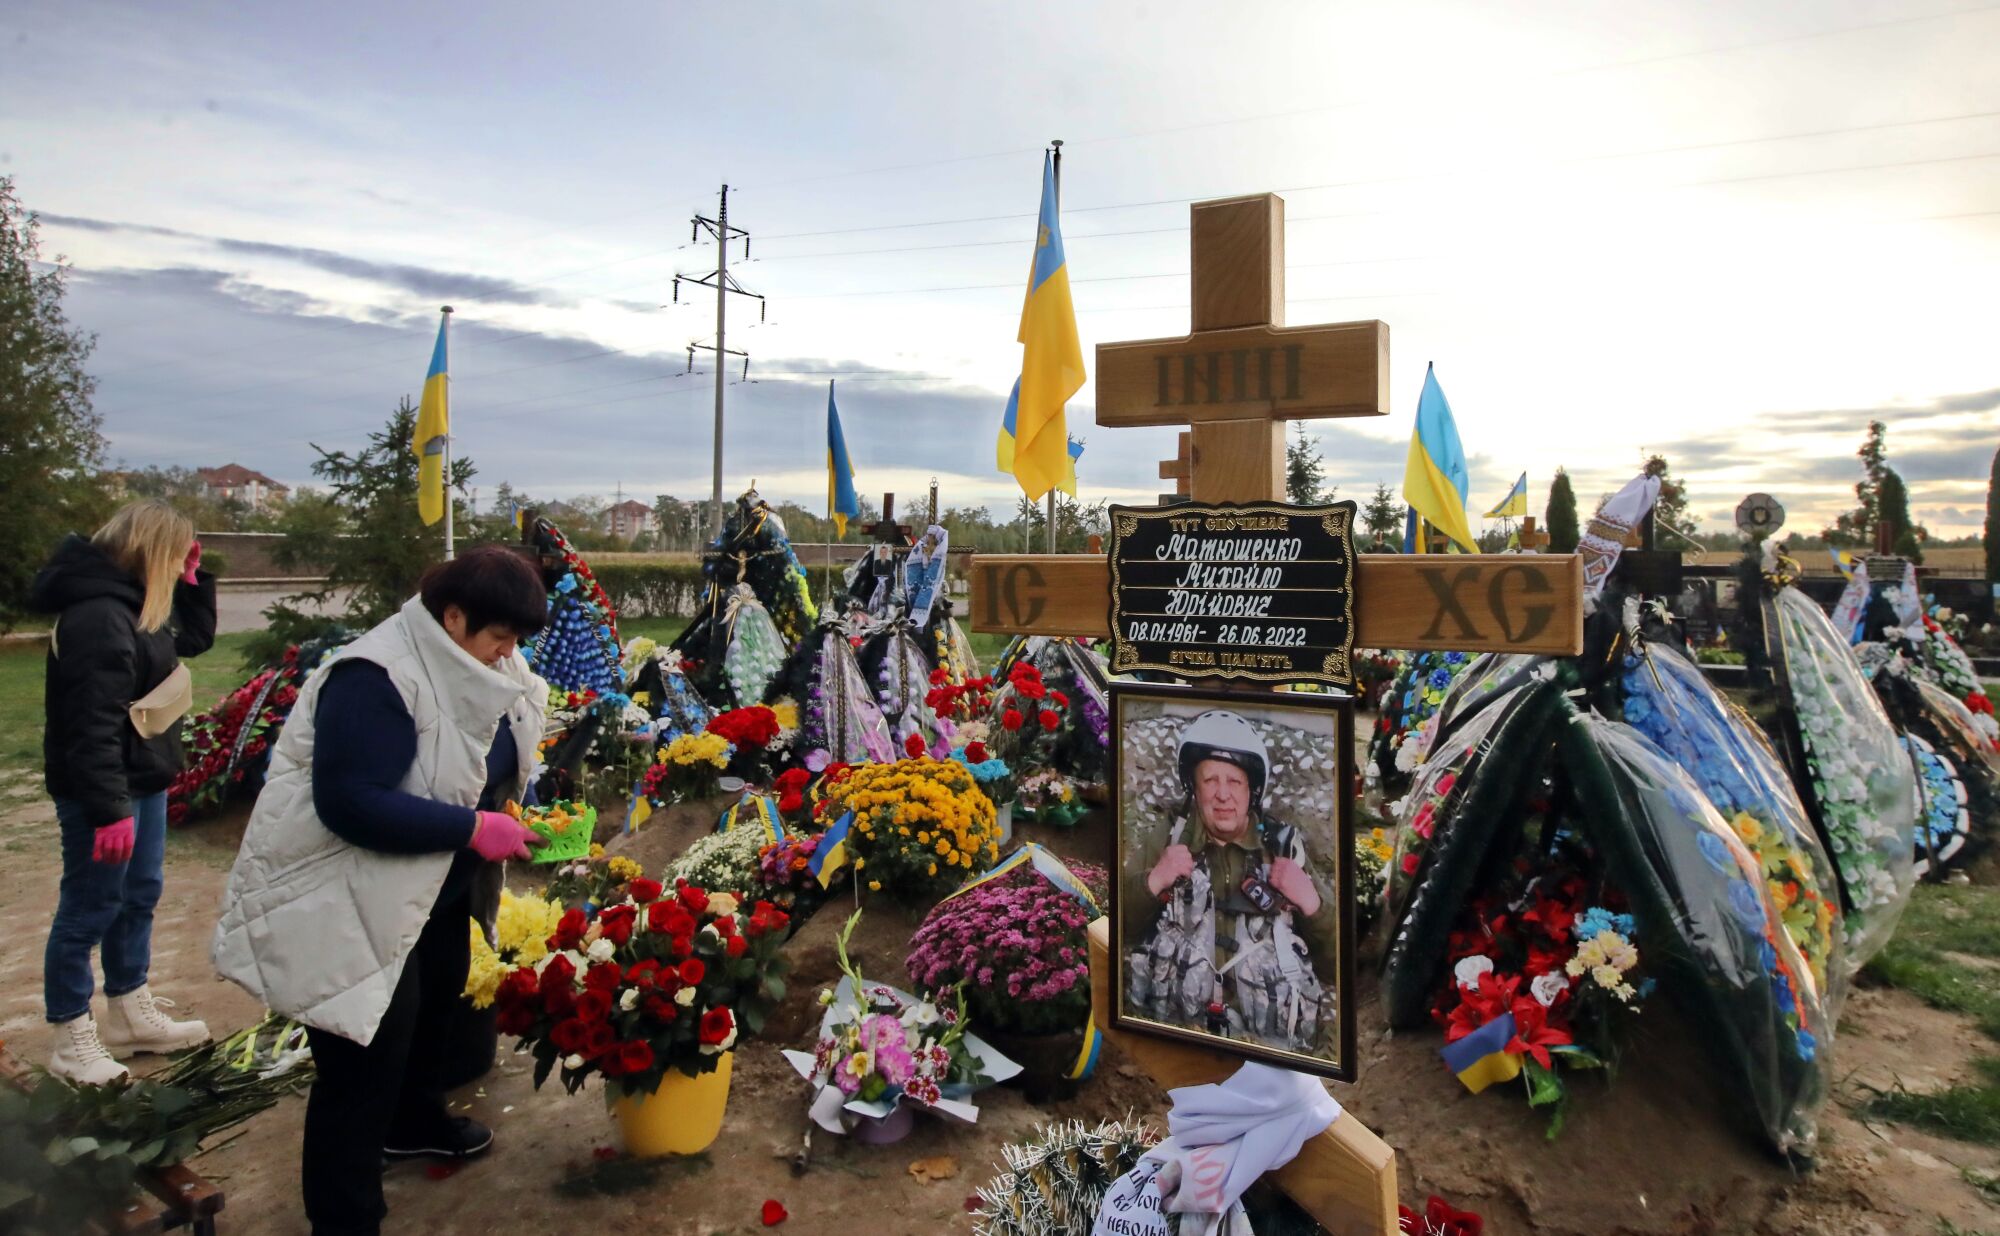 İki kadın çiçekler, haçlar ve diğer eşyalarla süslenmiş mezarları ziyaret ediyor